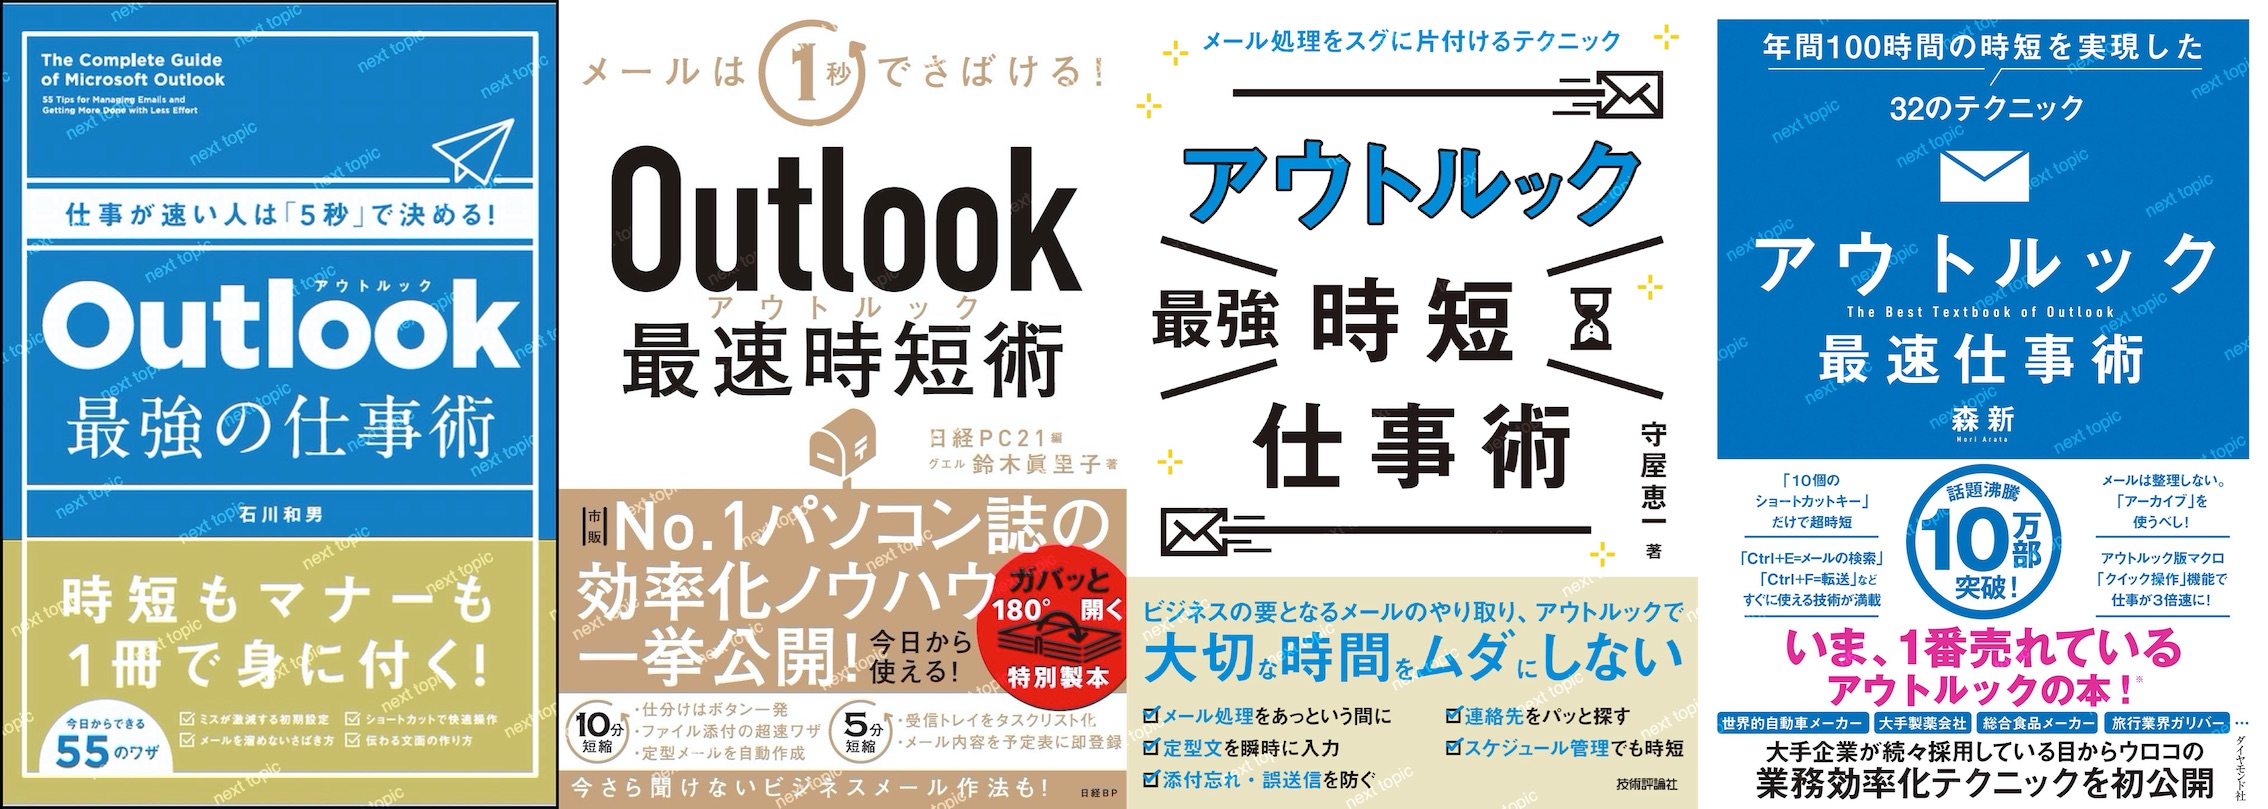 最新最全の Outlookビジネスメール効率化自動化の教科書